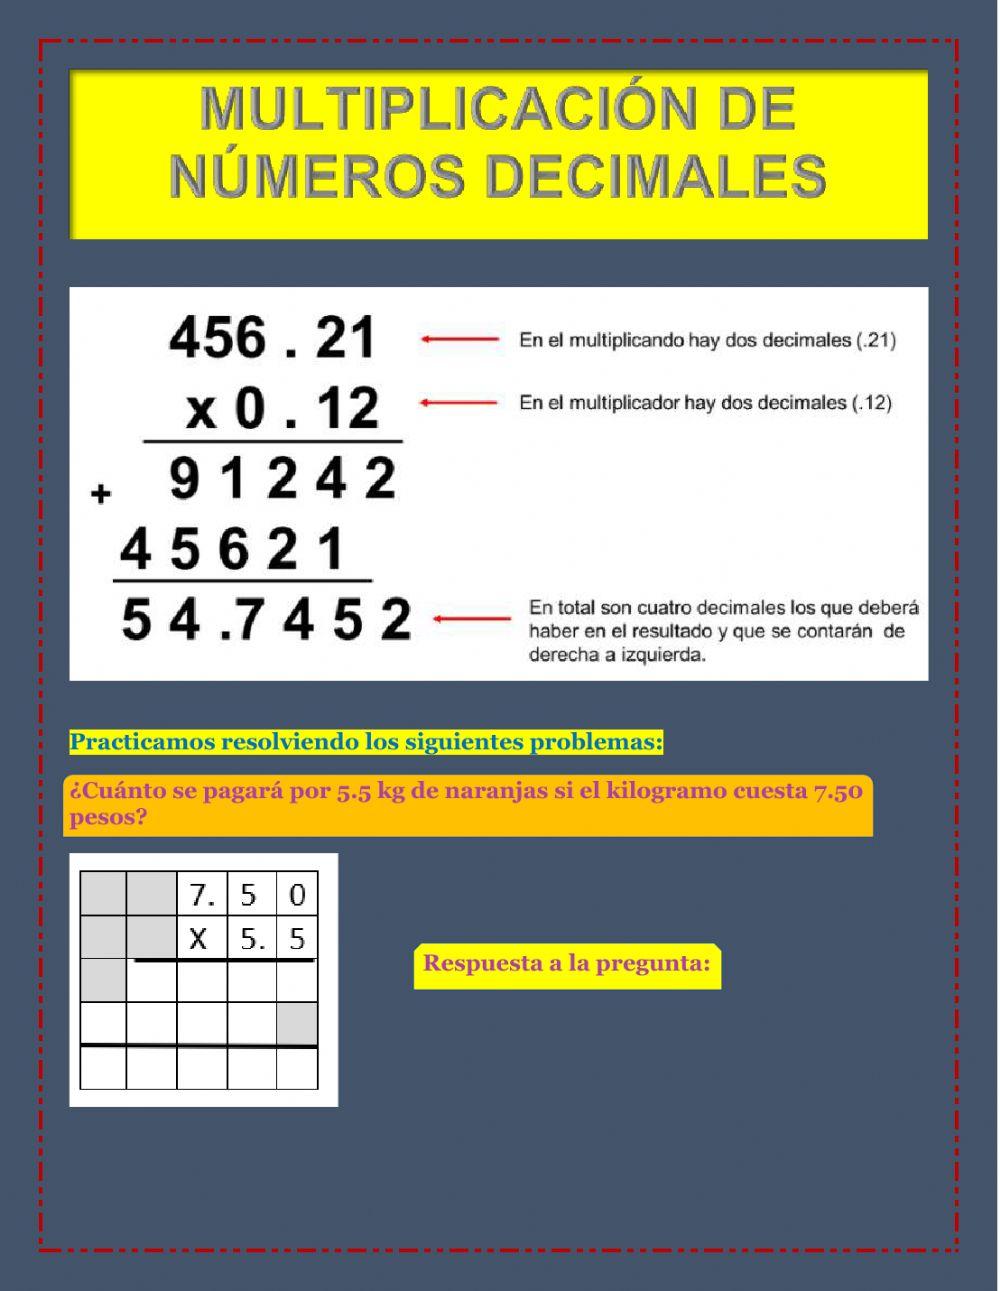 Multiplicación de números decimales exercise | Live Worksheets